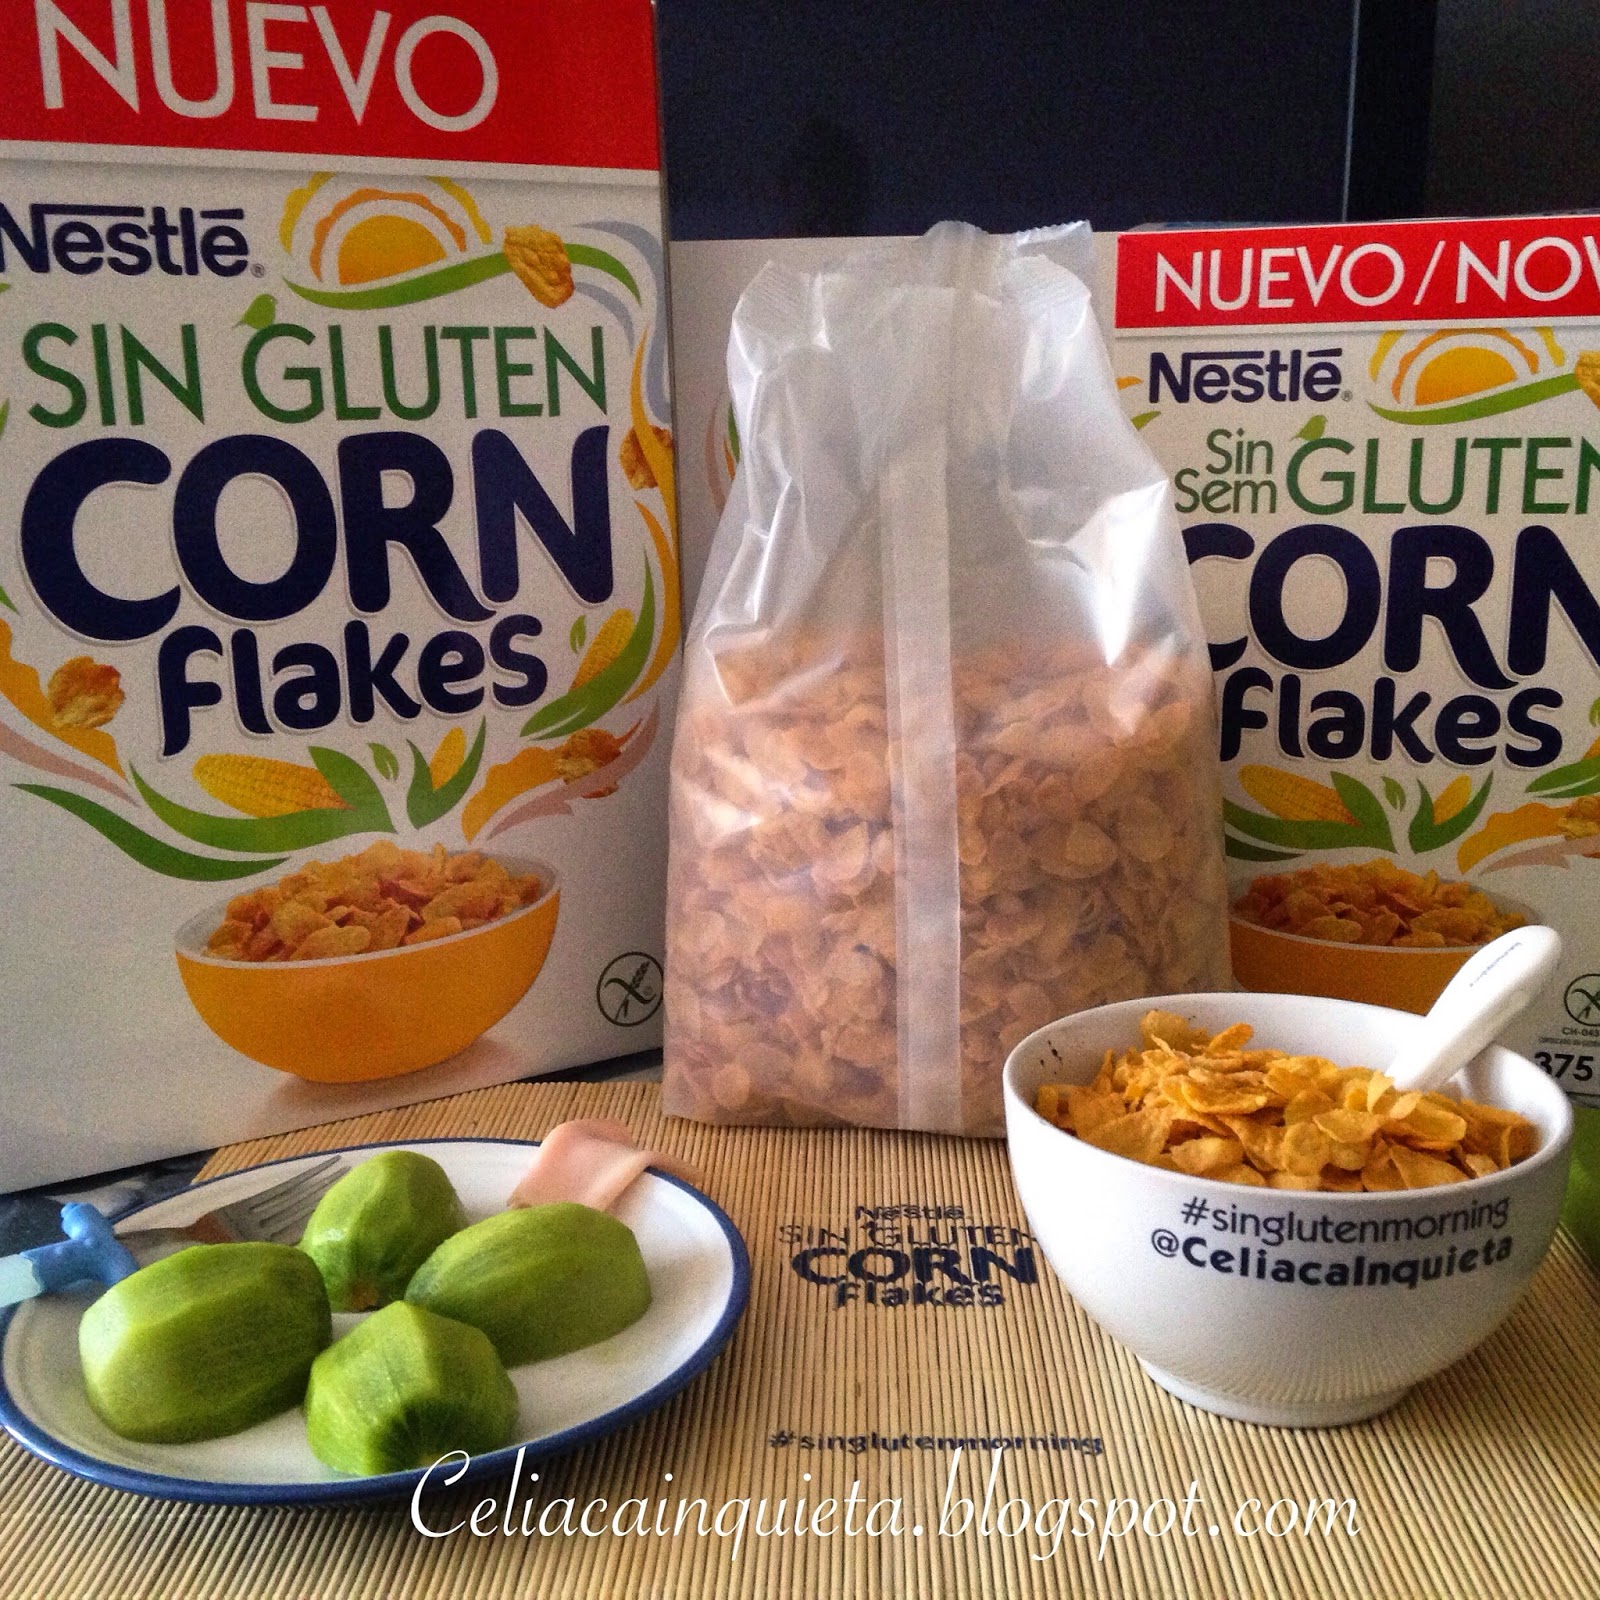 Nestlé lanza sus primeros cereales sin gluten